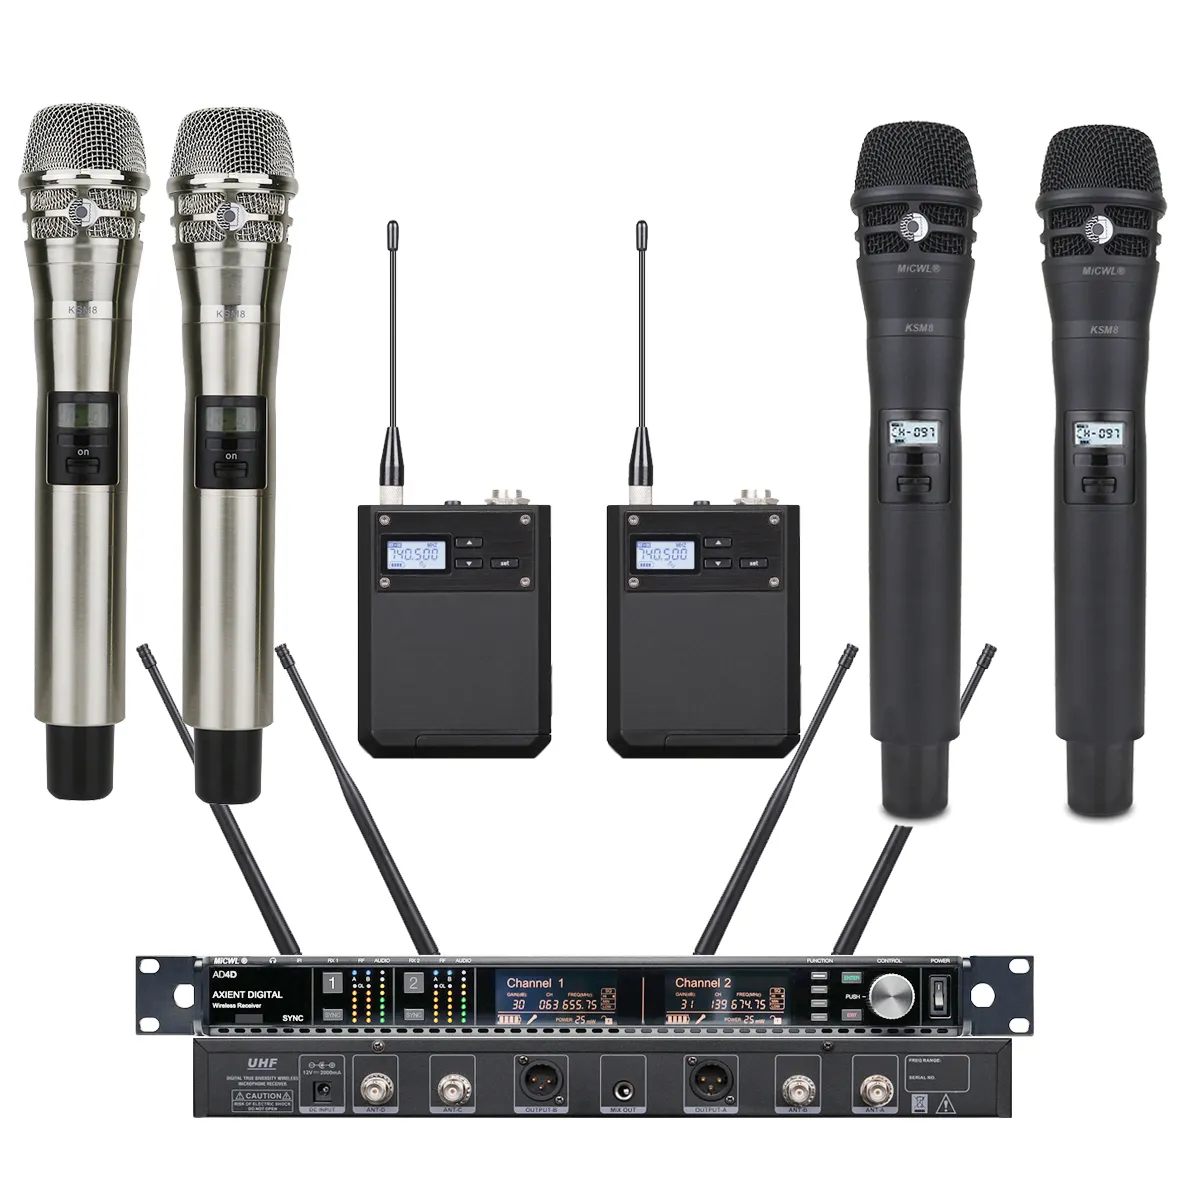 Microfone digital sem fio ksm8 ad4d, microfone preto com canal duplo uhf, diversidade, estúdio de palco